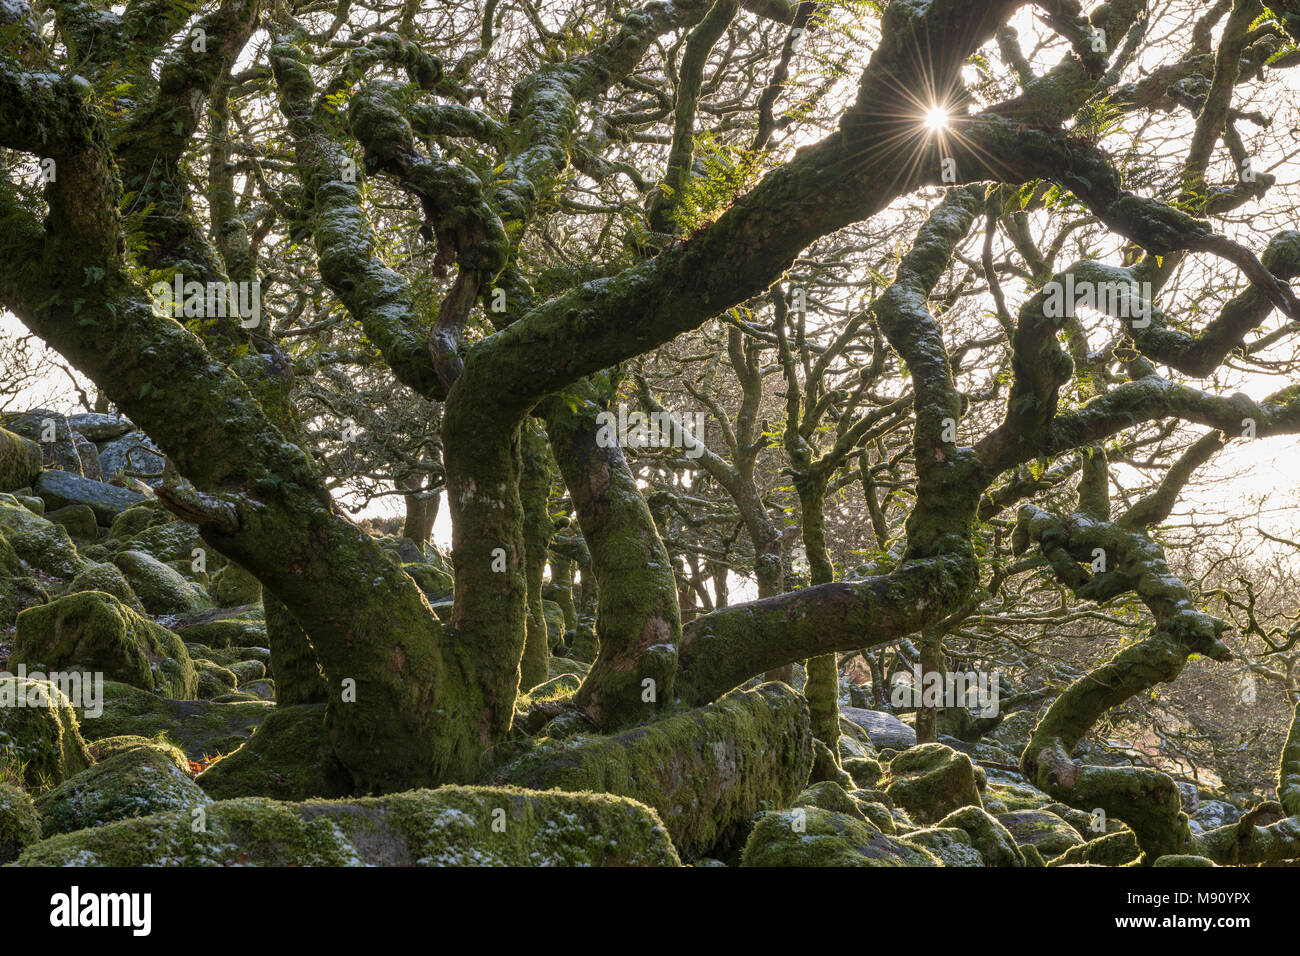 Soleil d'hiver brille en Wistman's Wood dans le Dartmoor National Park, Devon, Angleterre. Hiver (décembre) 2017. Banque D'Images